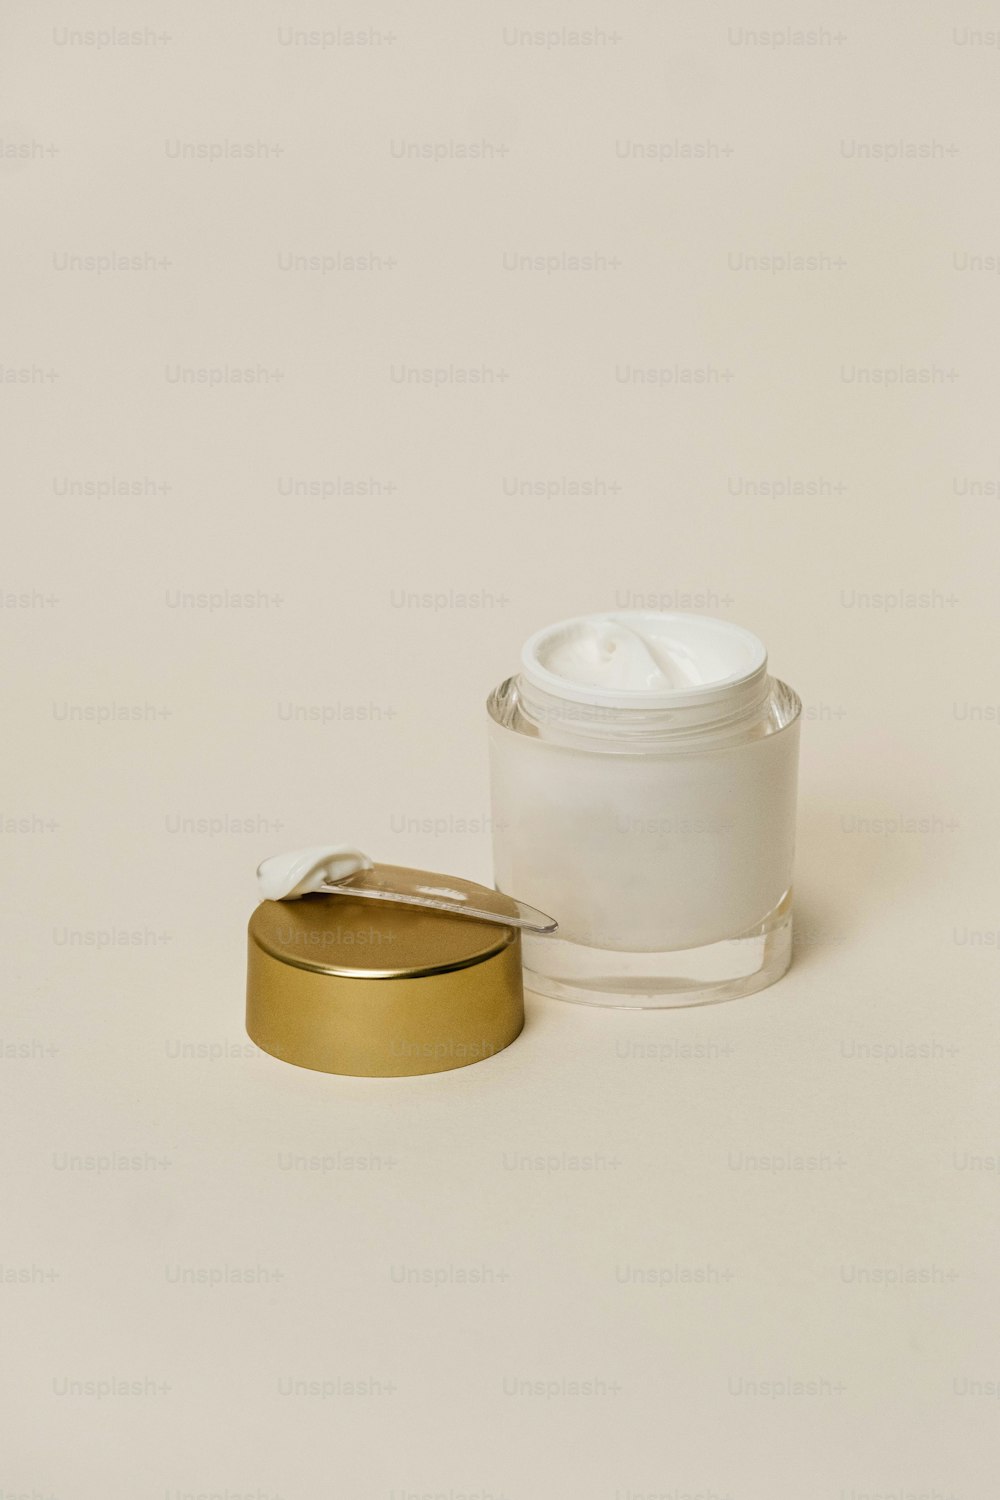 un contenitore bianco con un coperchio dorato accanto a un contenitore bianco